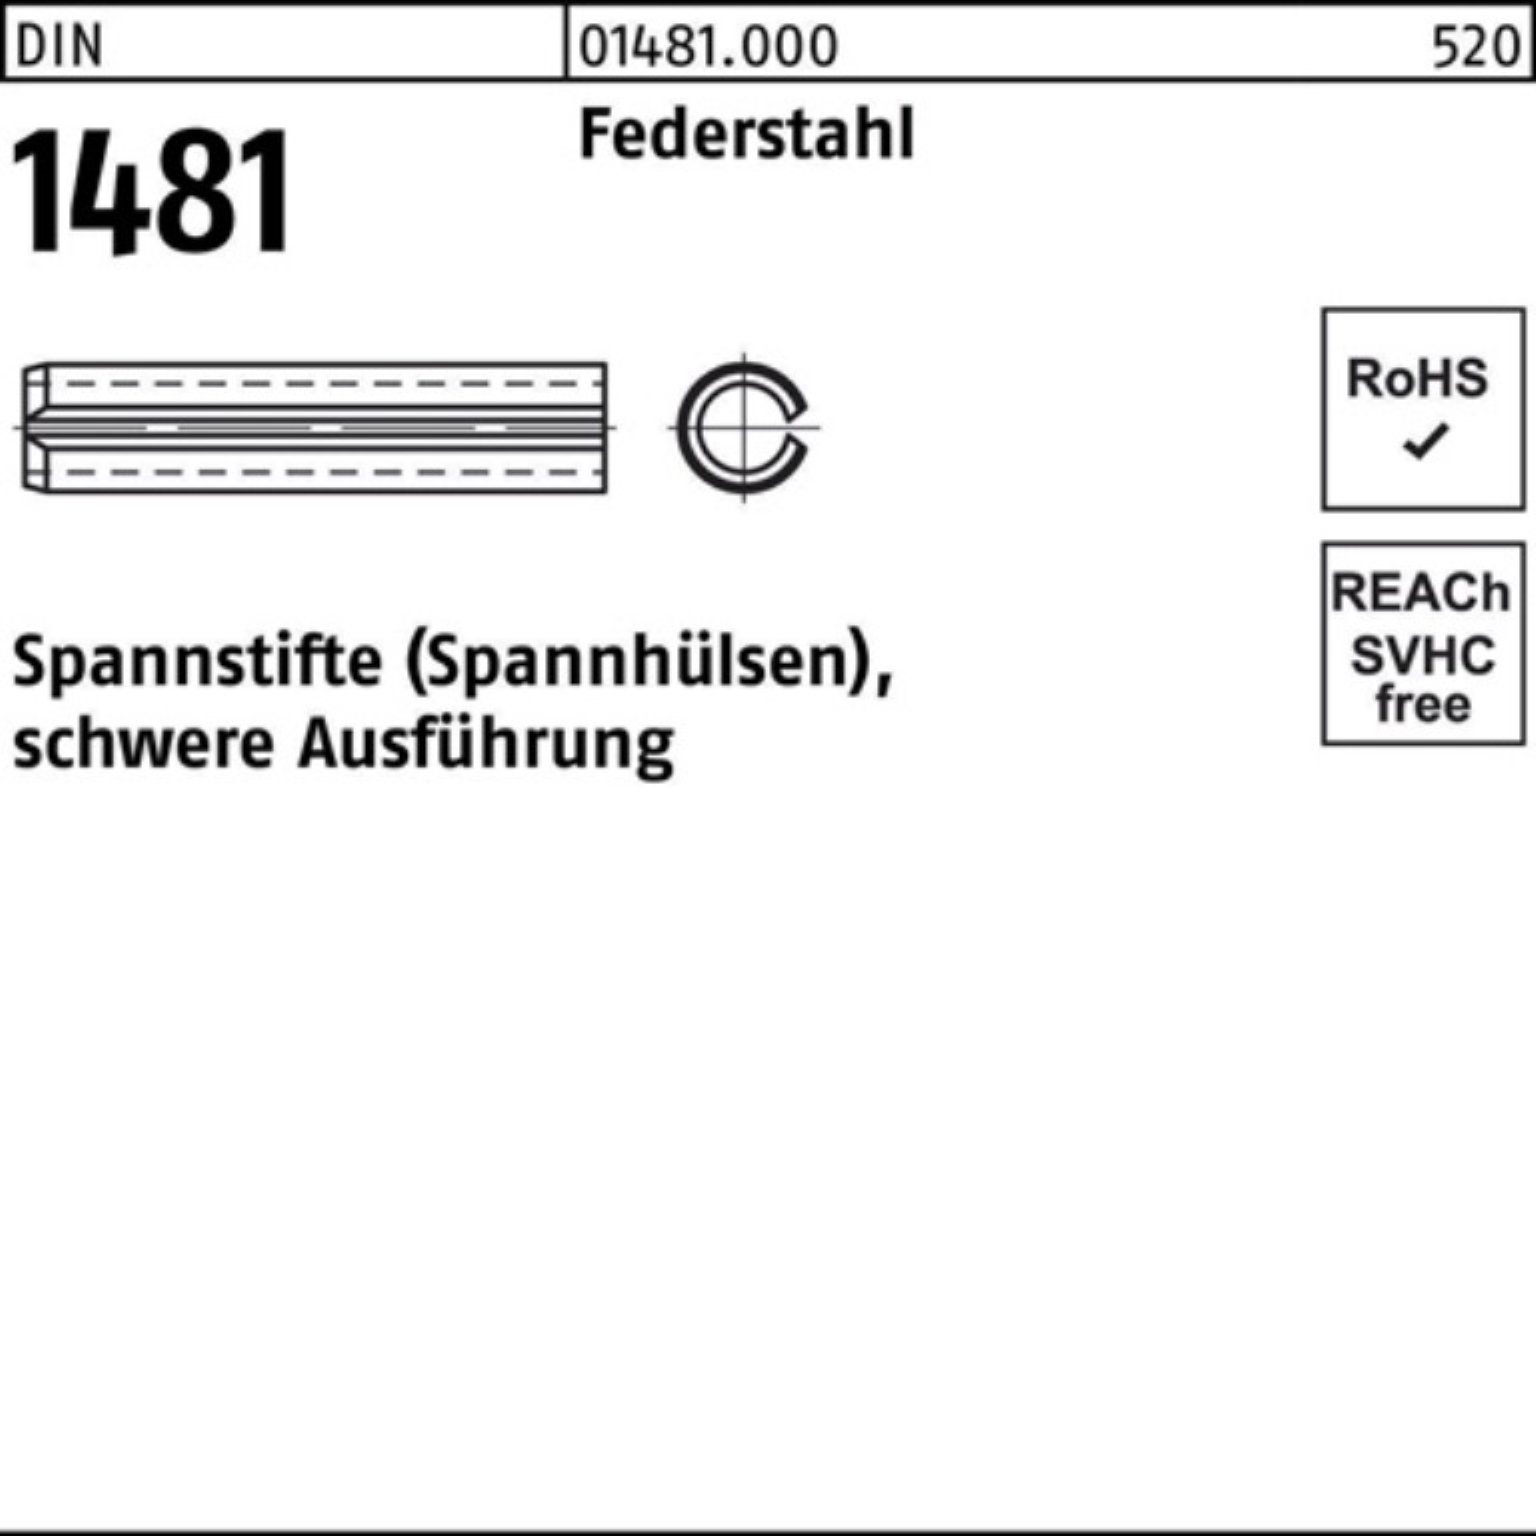 Reyher Spannstift Ausführung 32 Federstahl 1481 1 10x schwere Spannstift Pack DIN 100er